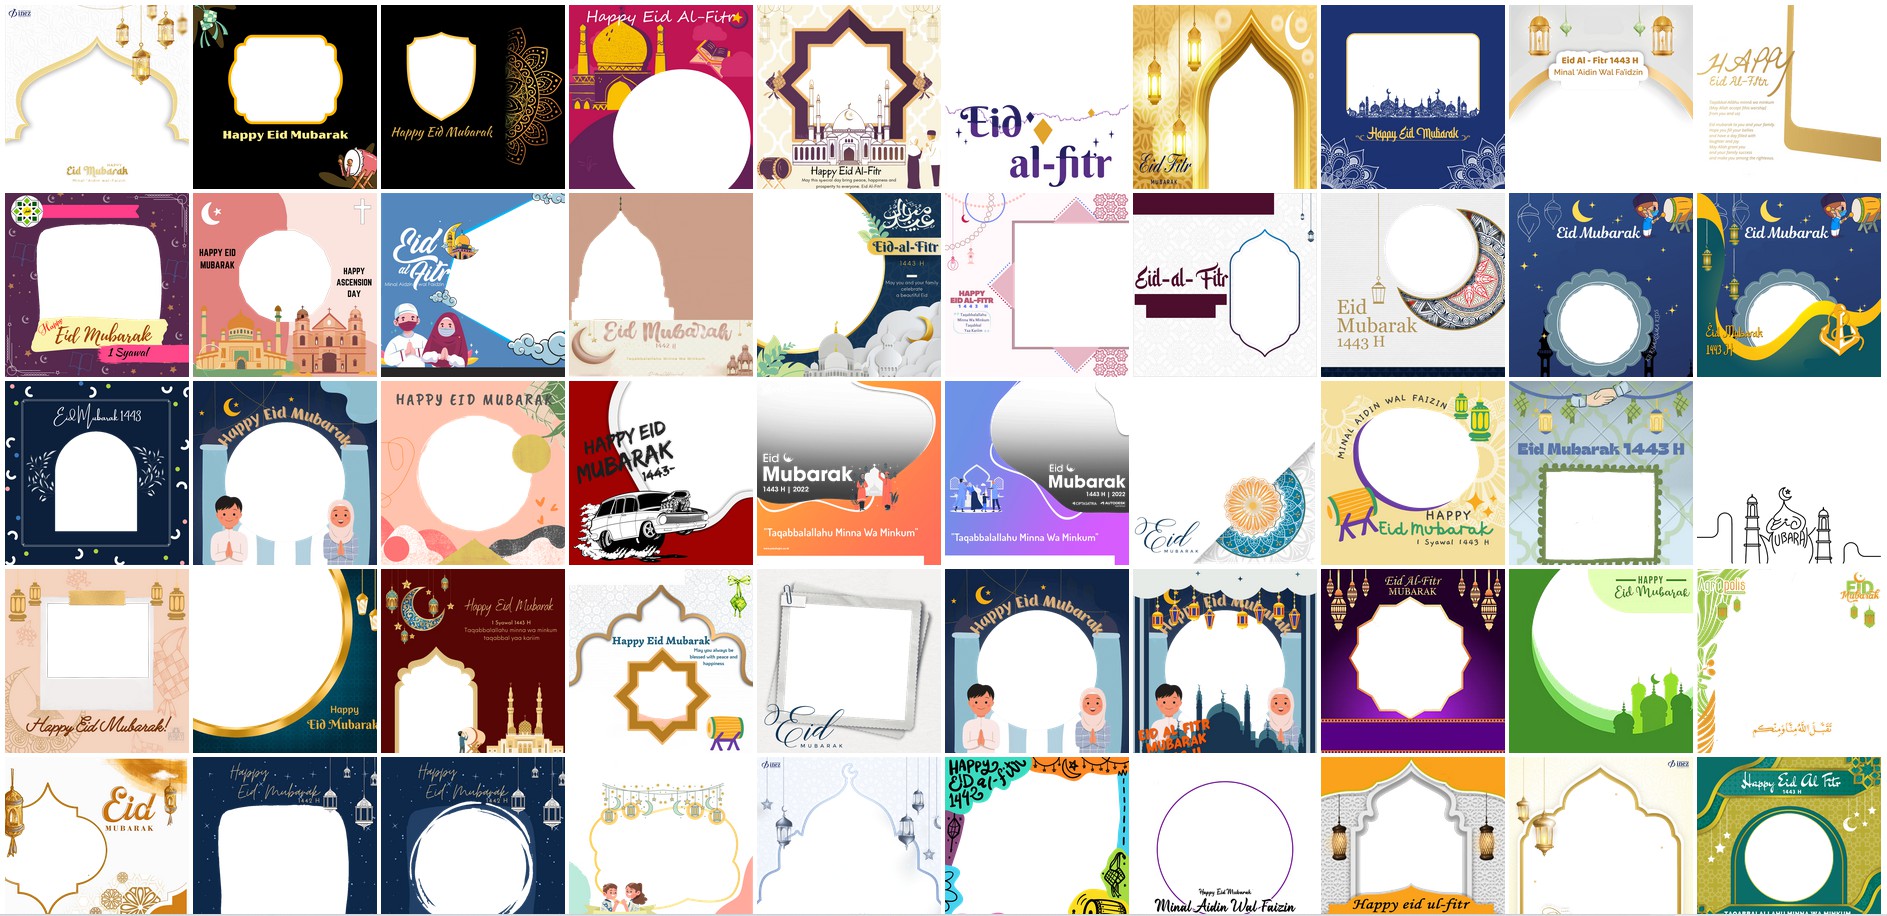 Twibbon Eid Al-Fitr 1443 H in Twibbon Maker Online Easy Ways